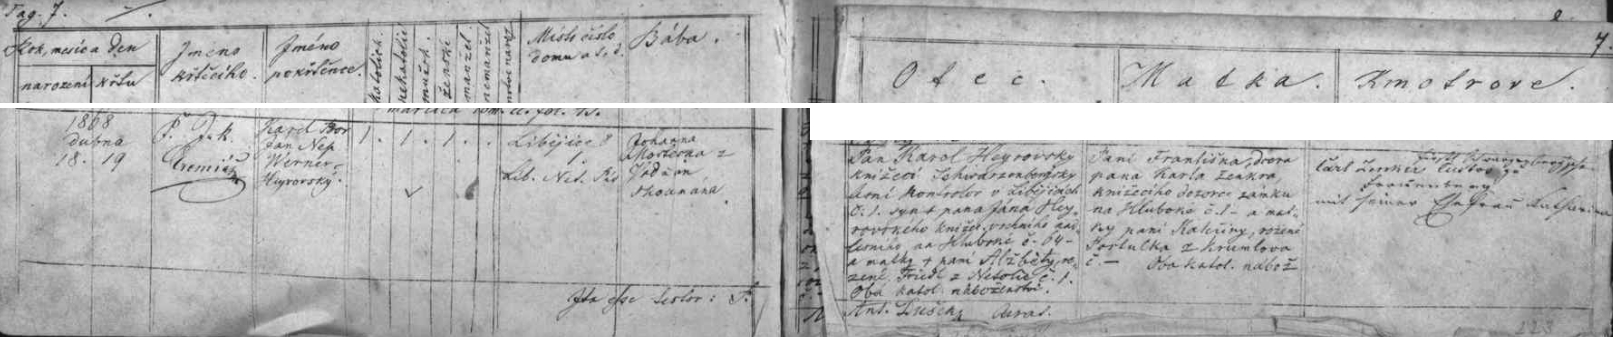 Záznam chelčické křestní matriky o narození syna Karla dne 18. dubna roku 1868 v Libějovicích